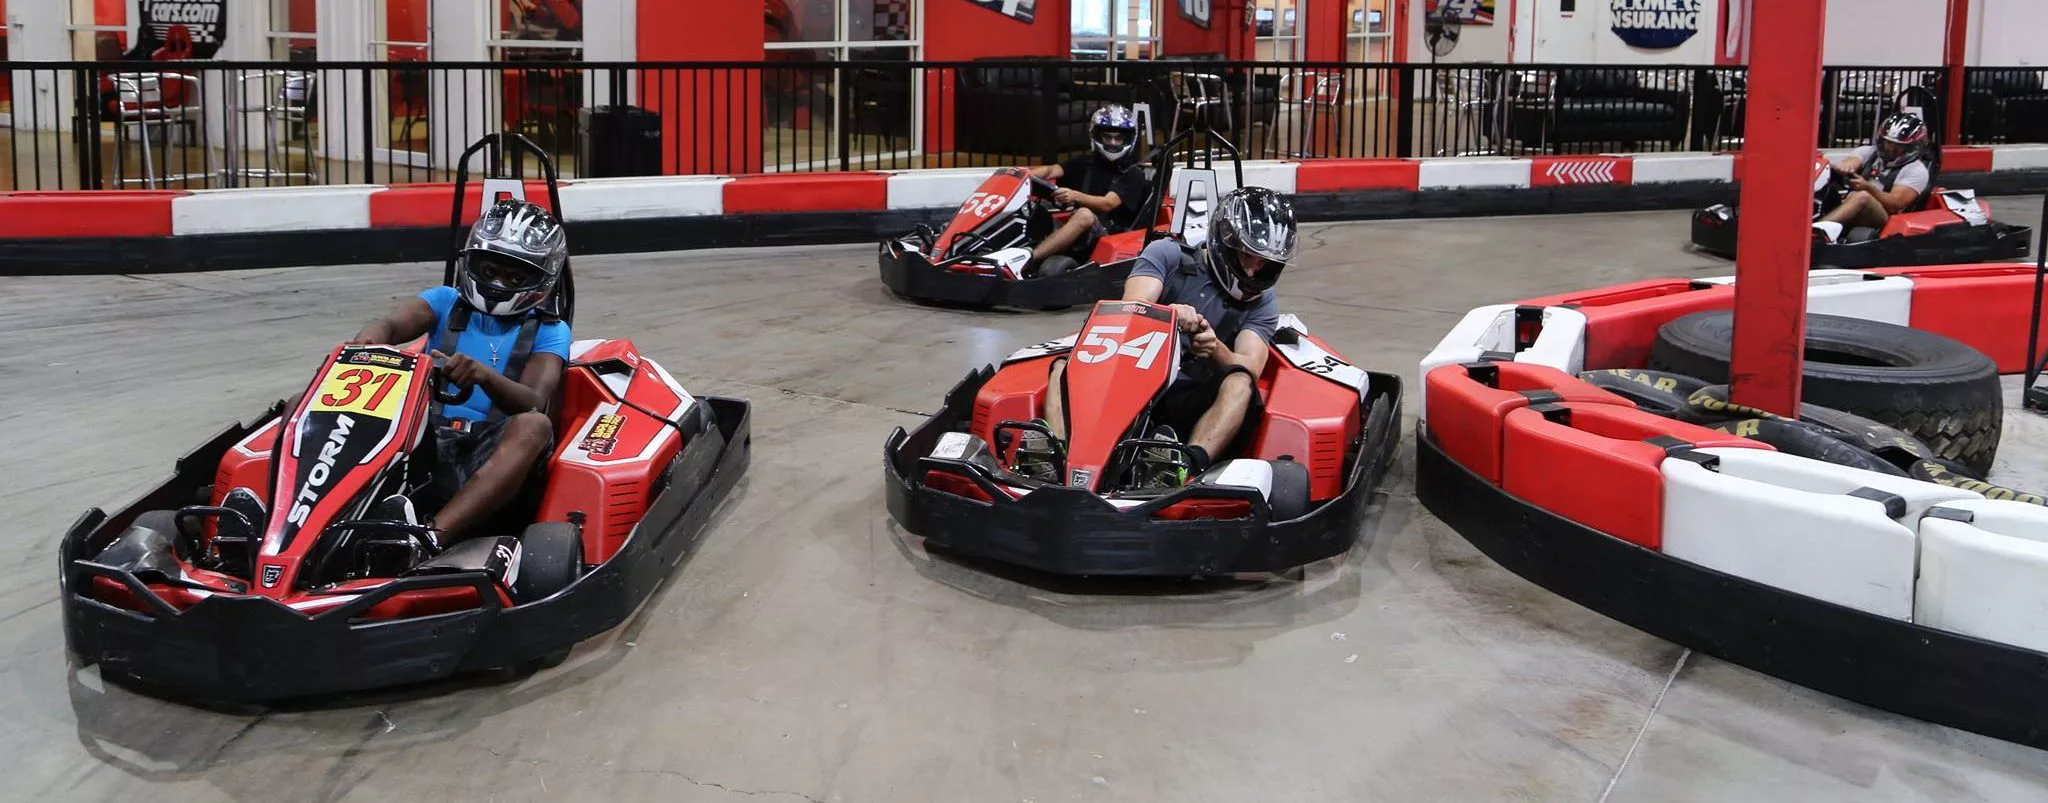 Things to Do in Bradenton: Mario Kart Tournament